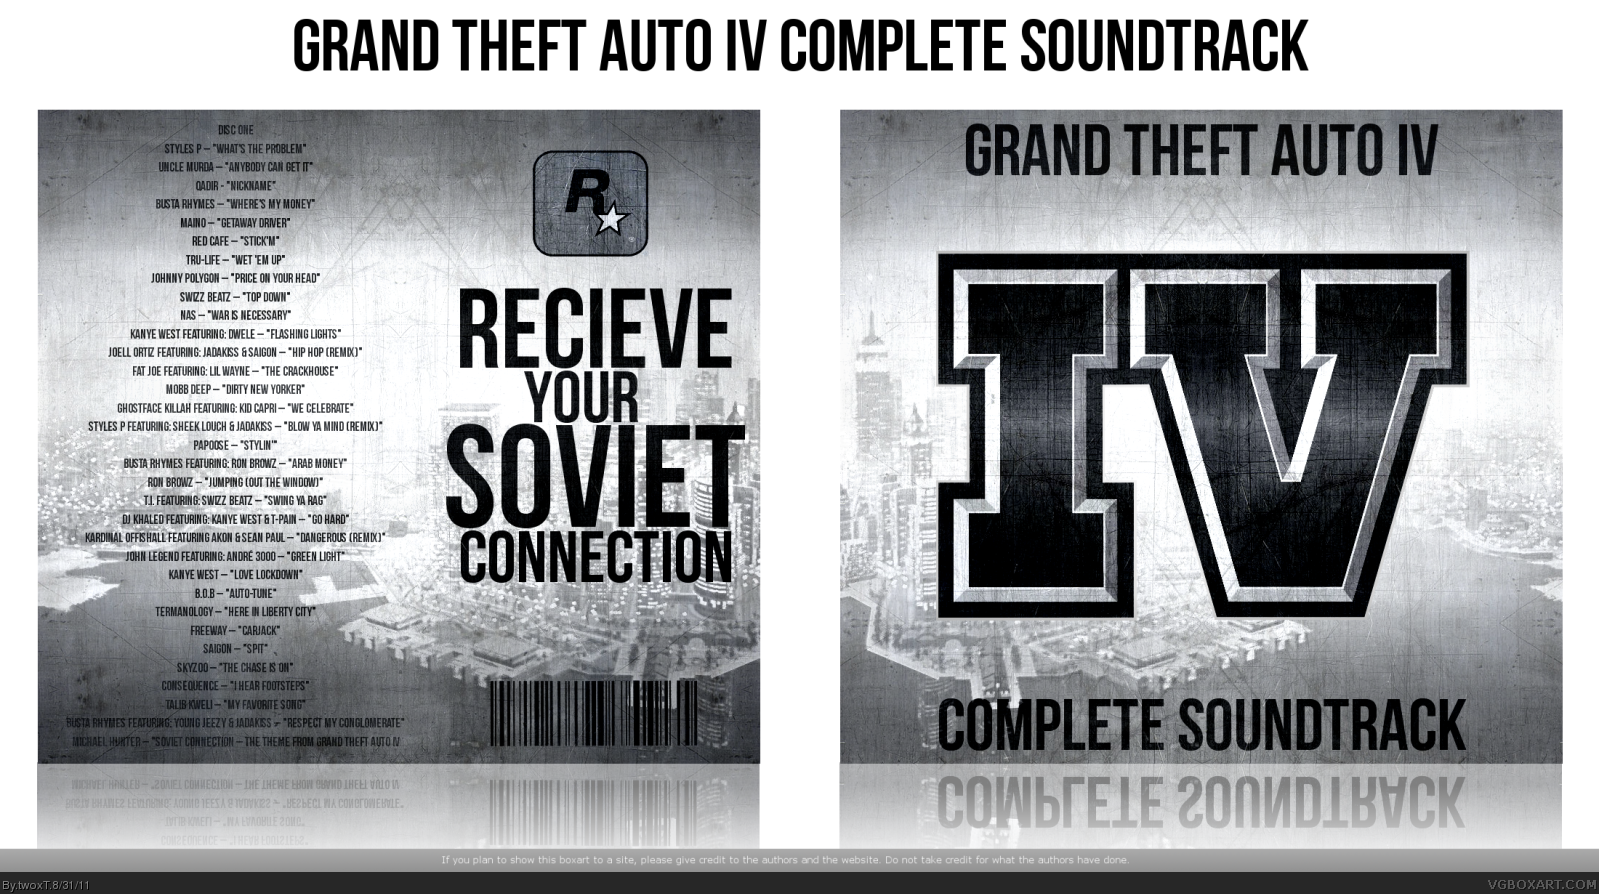 Grand Theft Auto IV Complete Soundtrack box cover